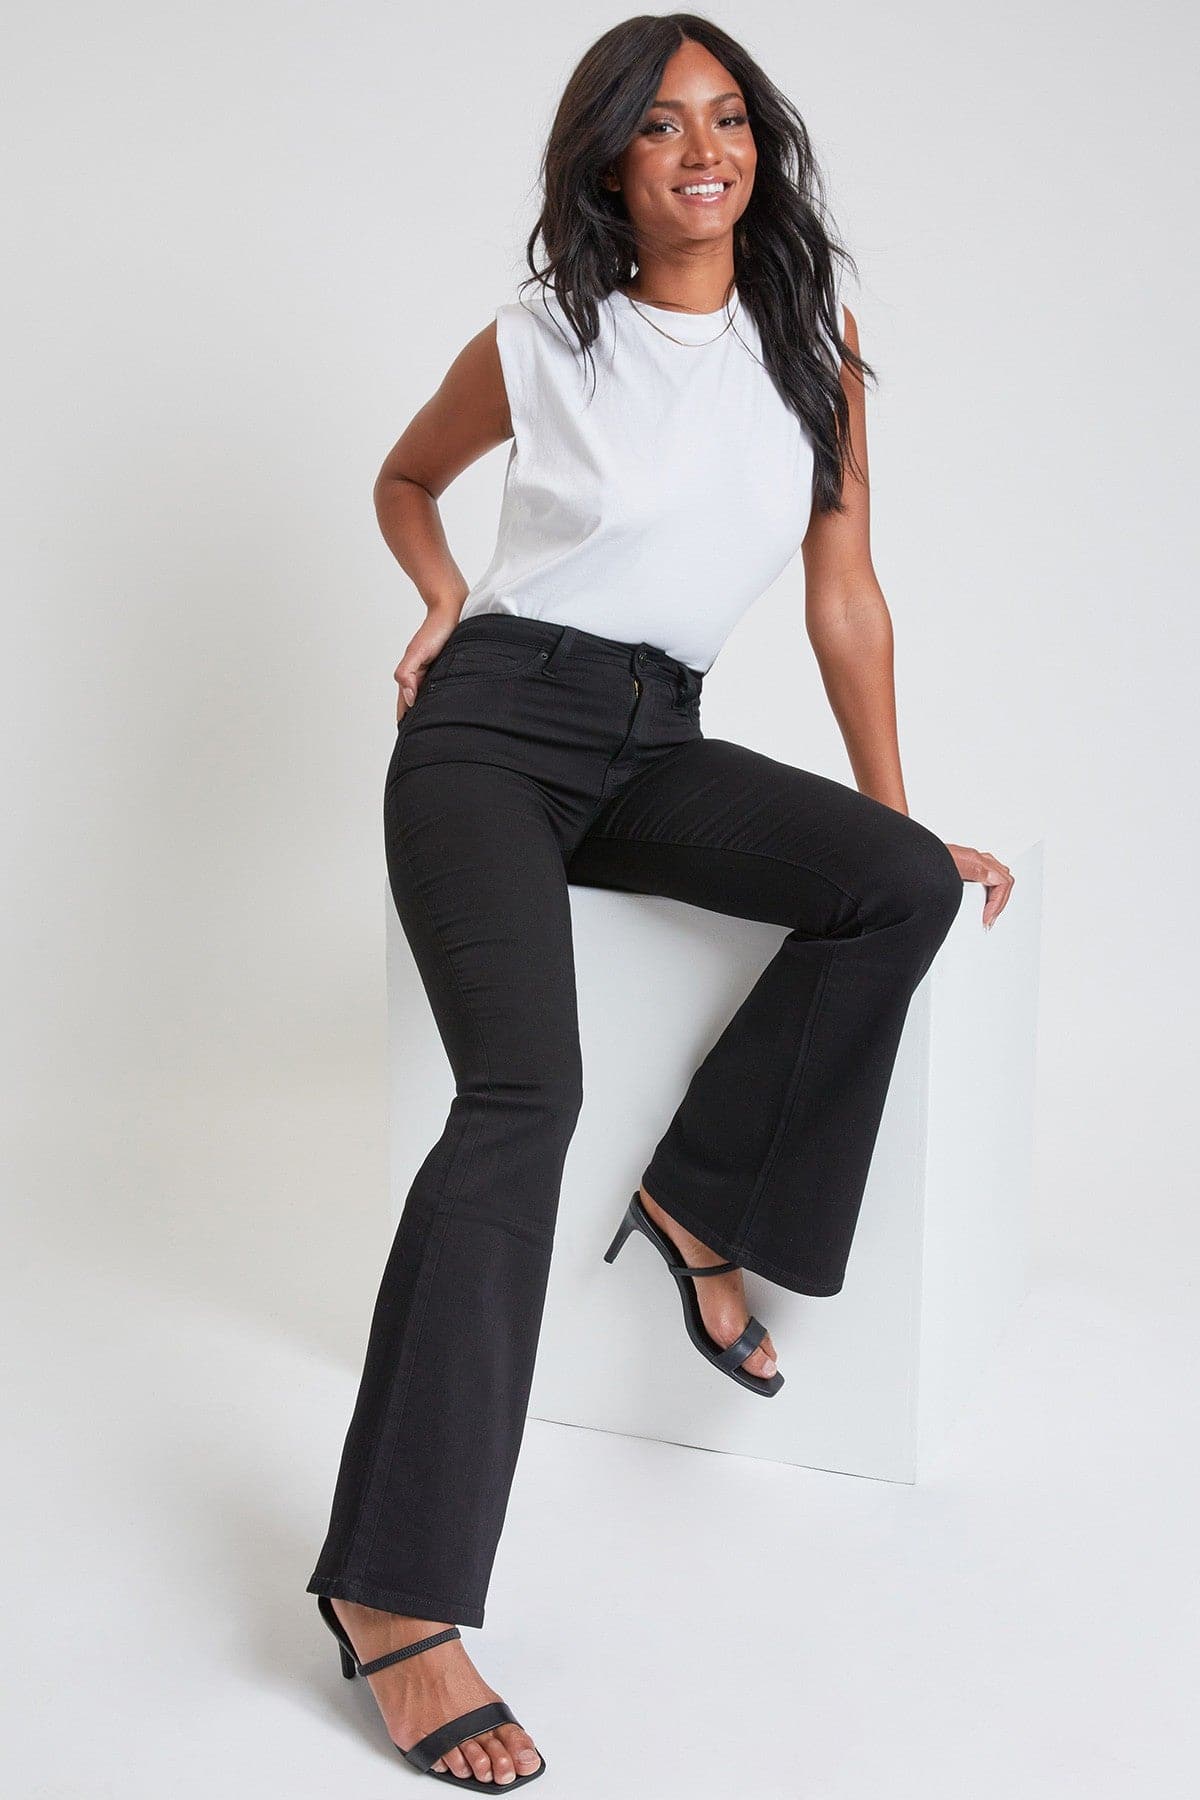 Women's Hyperdenim  Flare Jeans - Long Inseam